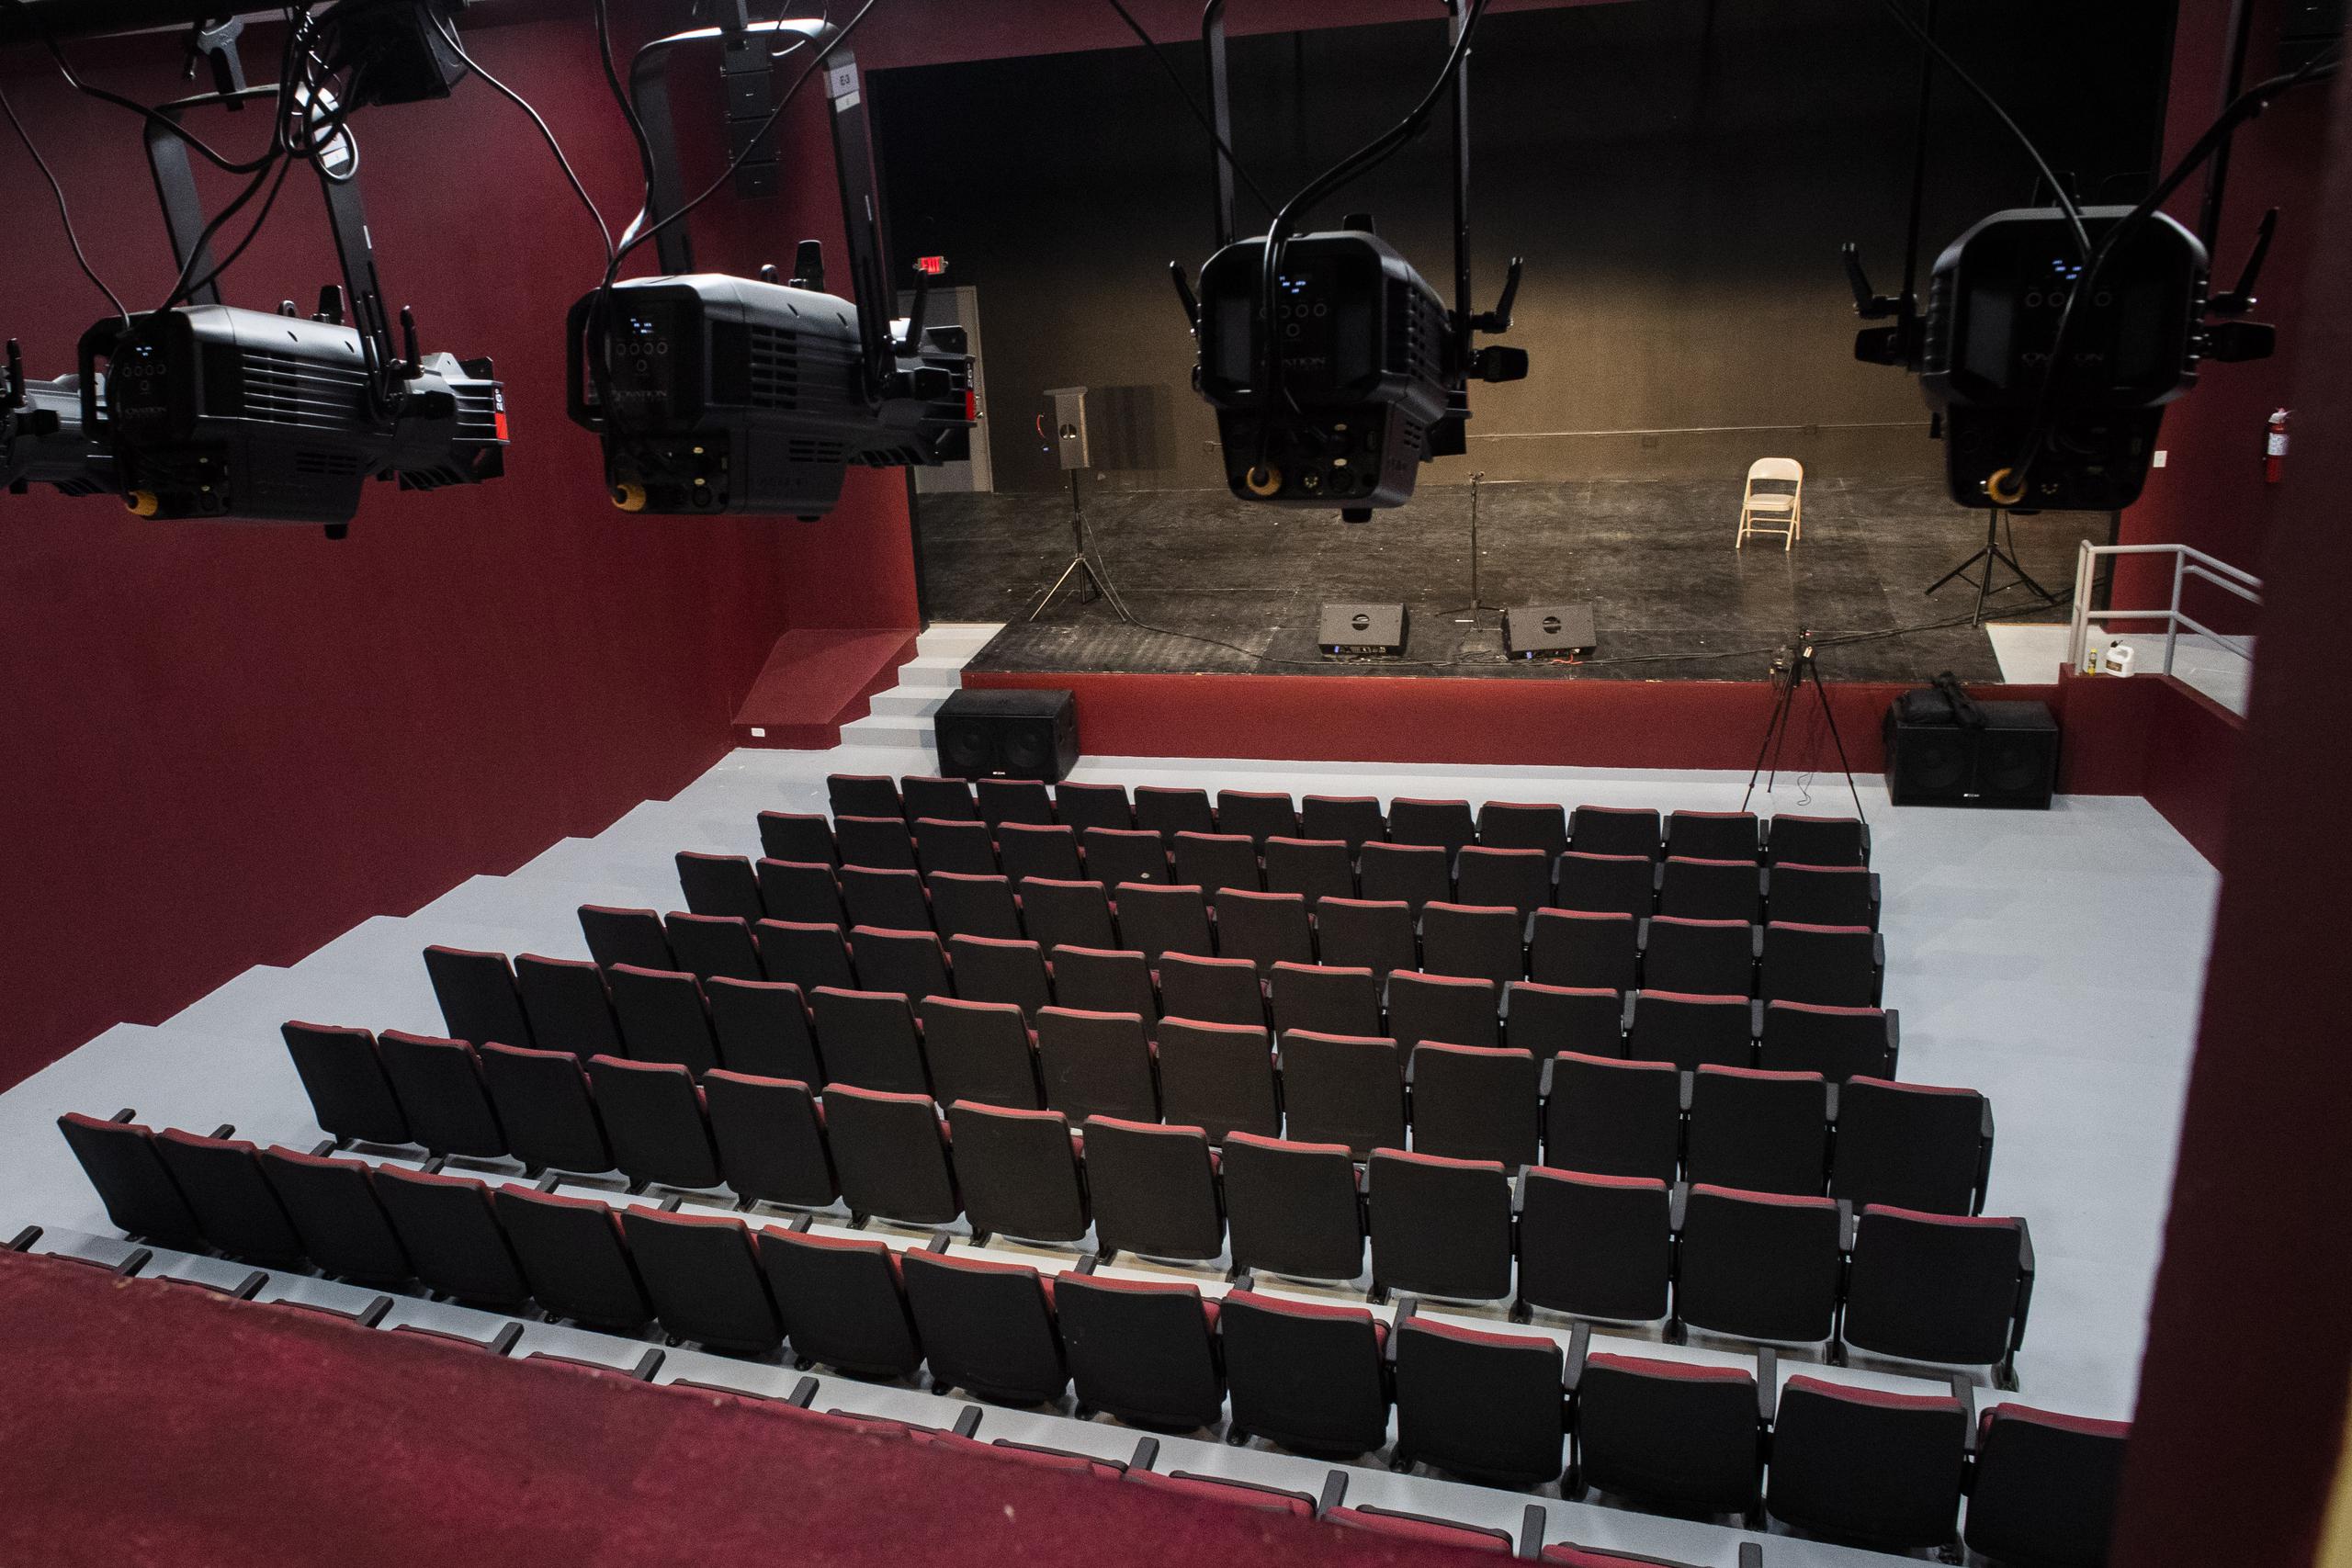 La sala de teatro y cine tiene una capacidad para 135 personas, pero se aumentarán más butacas.